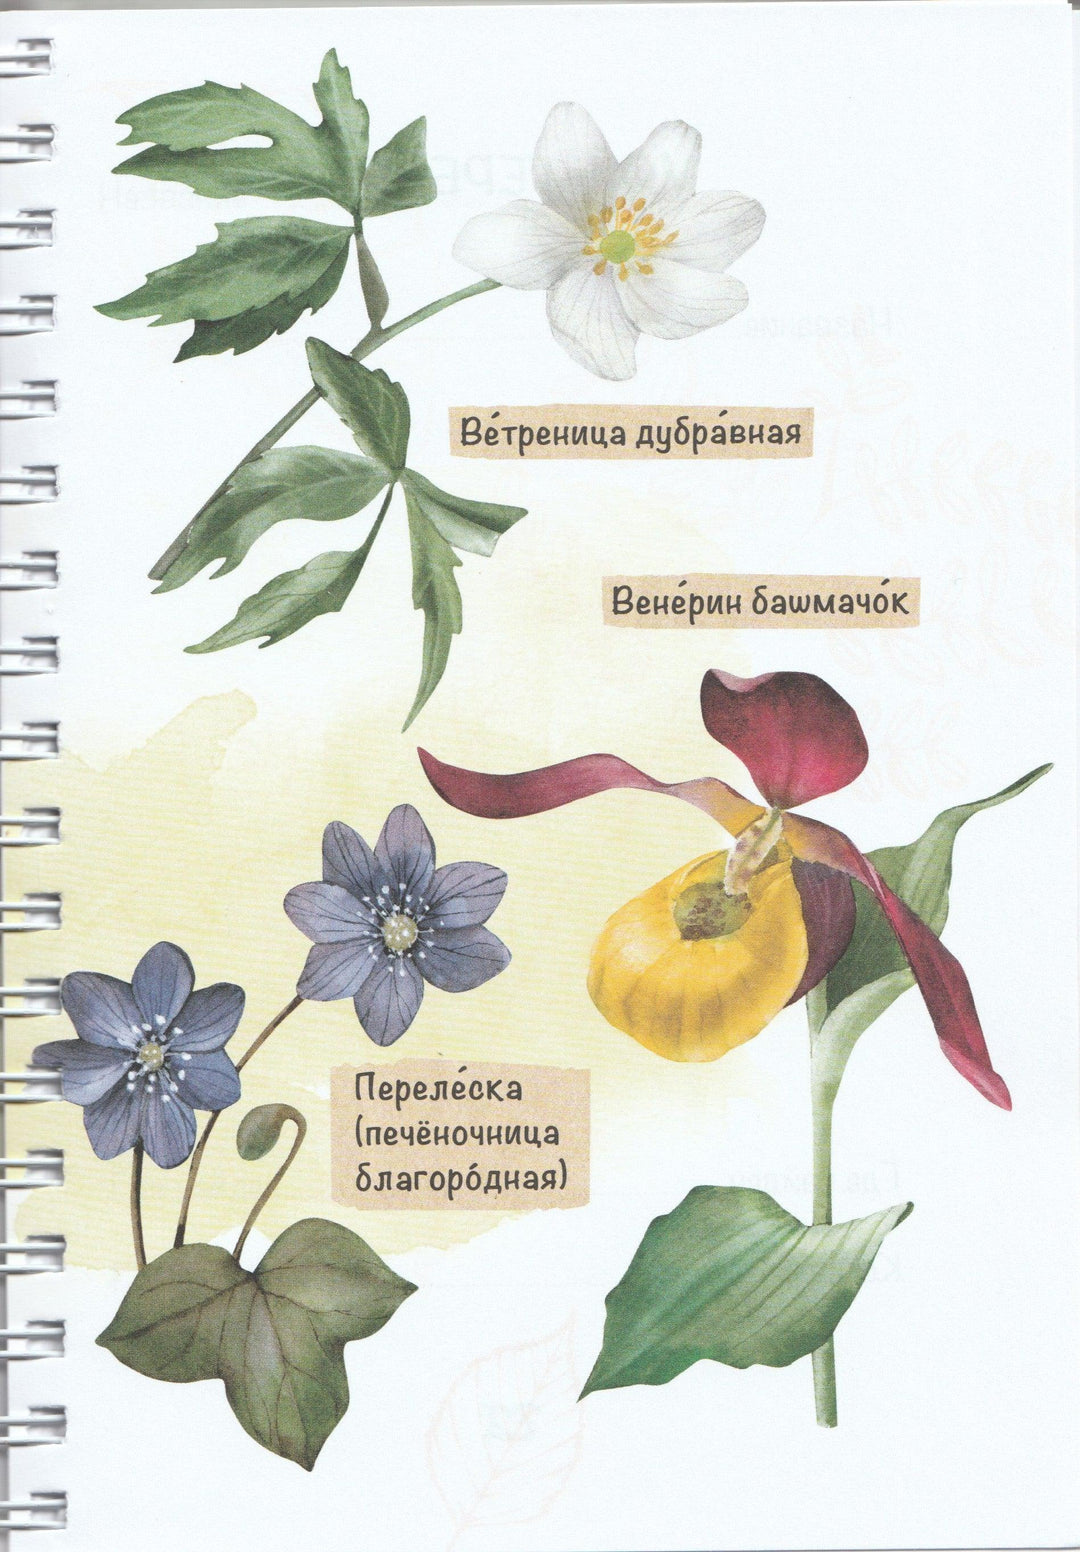 Лето на память. Моя первая коллекция растений-Азгальдова О.-КомпасГид-Lookomorie